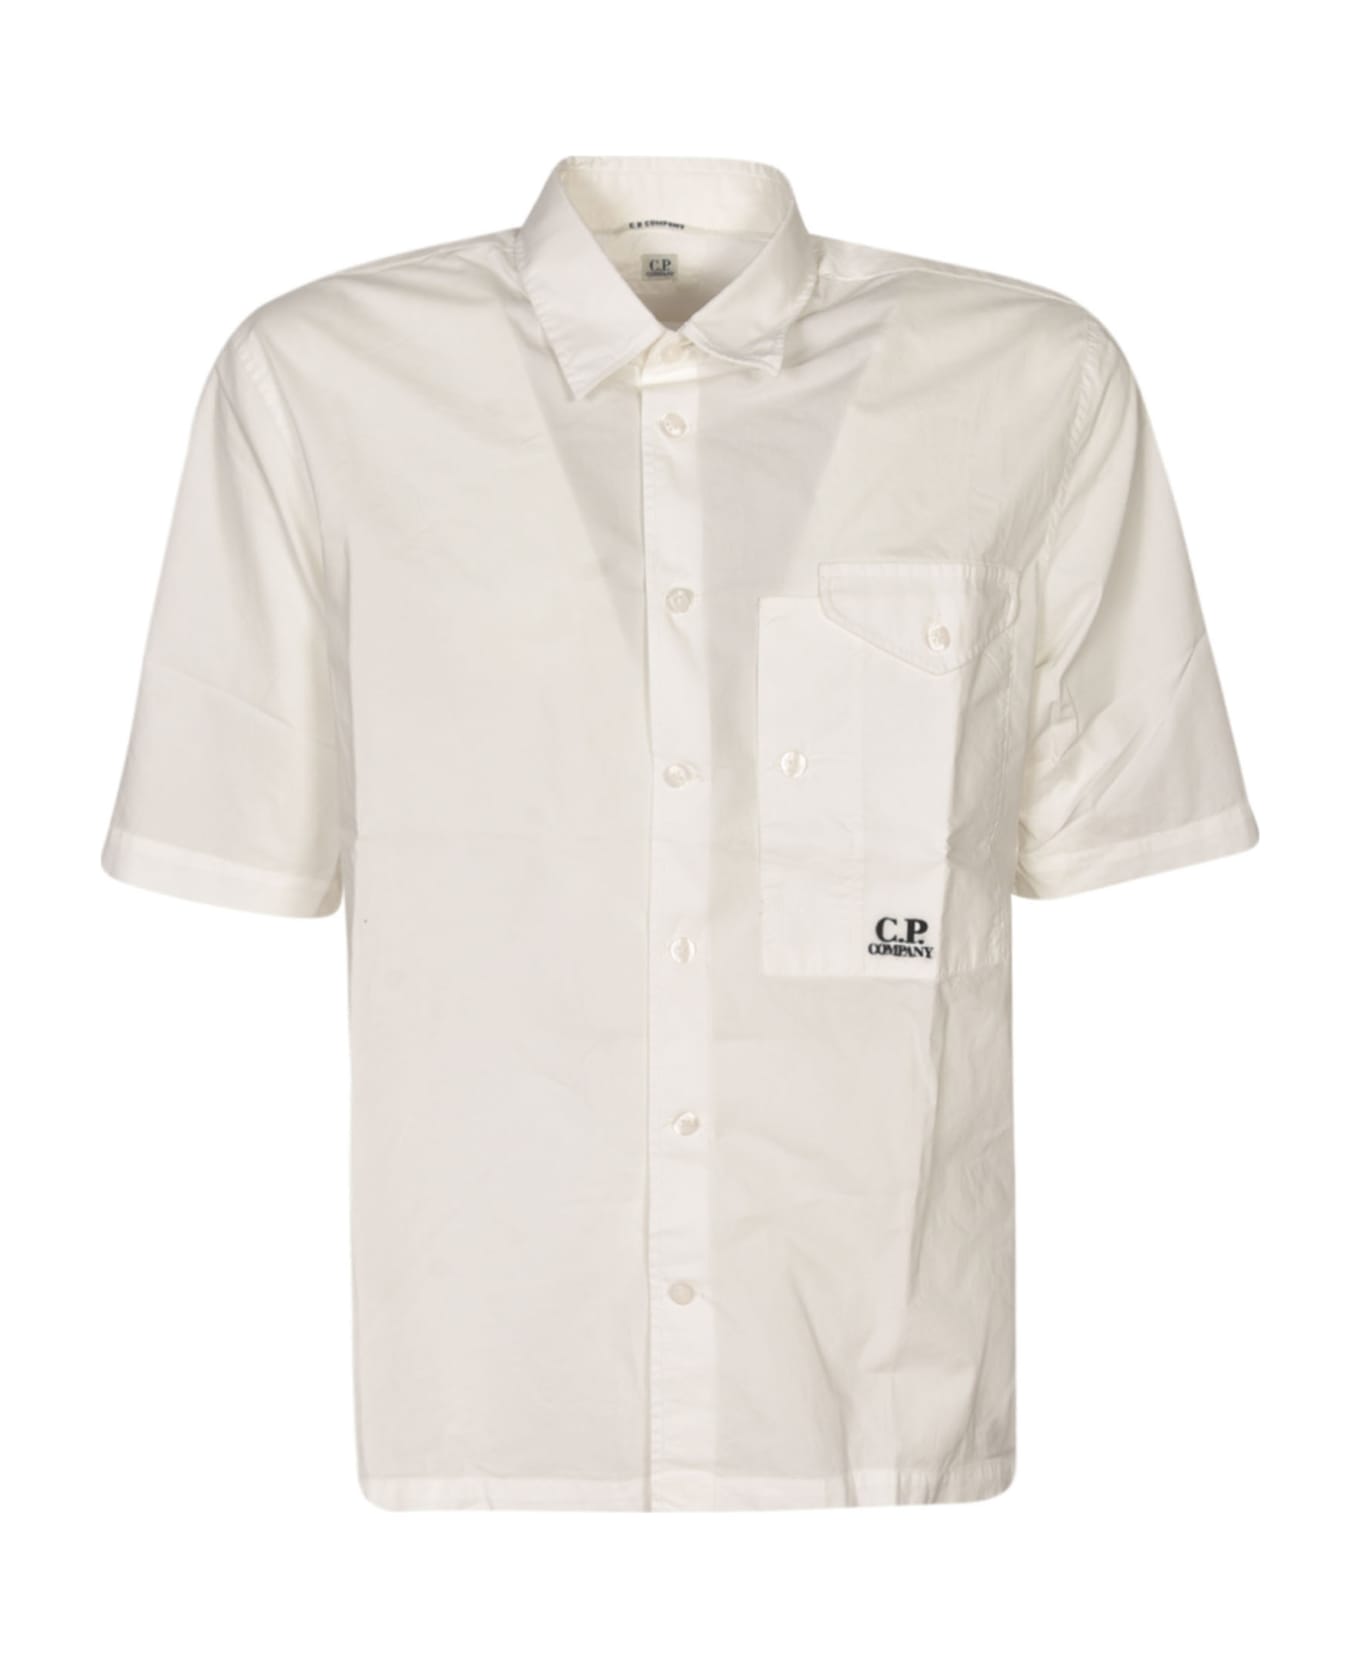 C.P. Company Oversized Pocket Short-sleeved Shirt - Gauze White